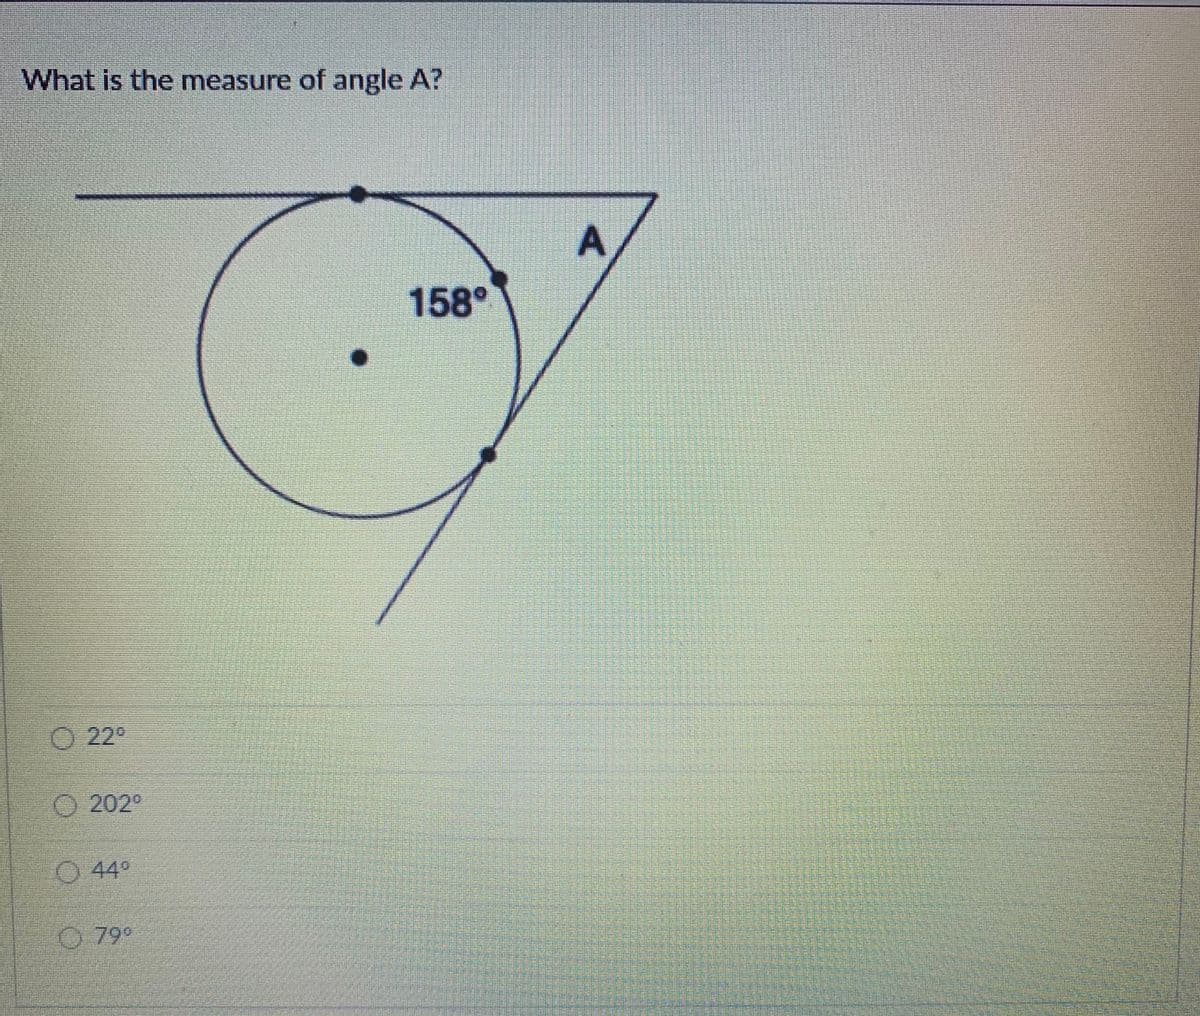 What is the measure of angle A?
158°
O 22°
O 202°
O 44
79°
A.
